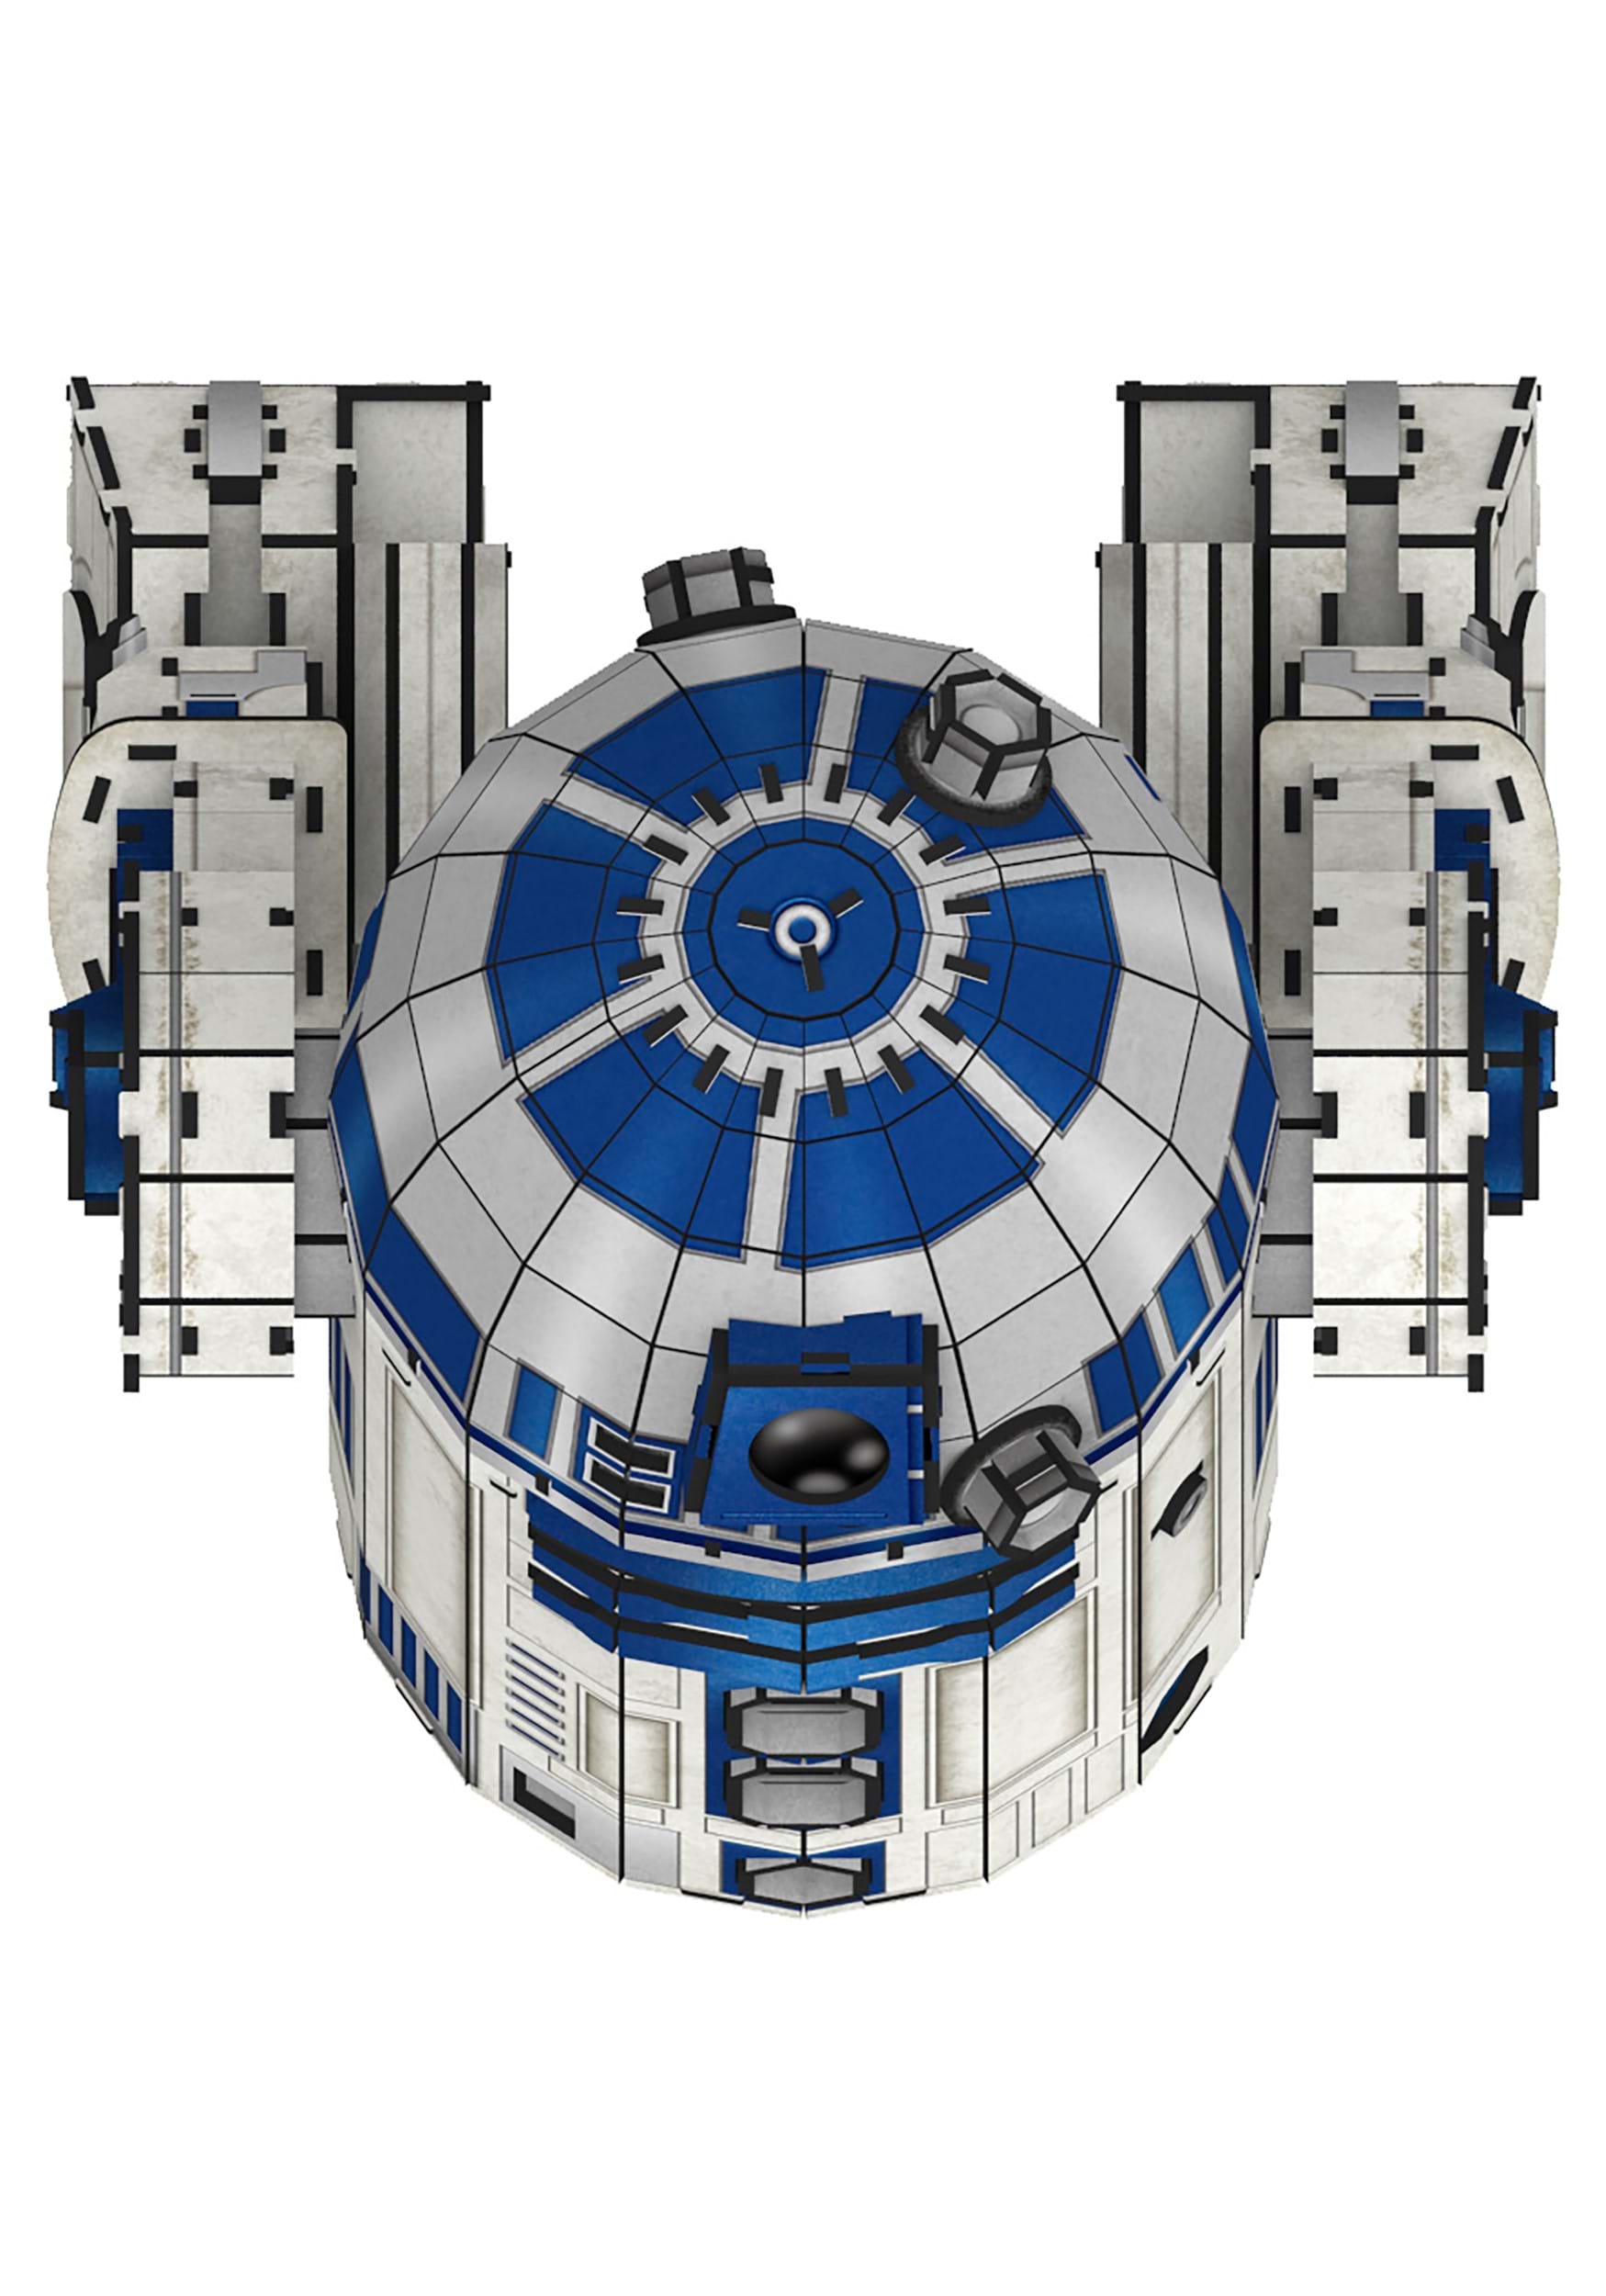 Star Wars: R2D2 Paper Model Kit- Medium Size